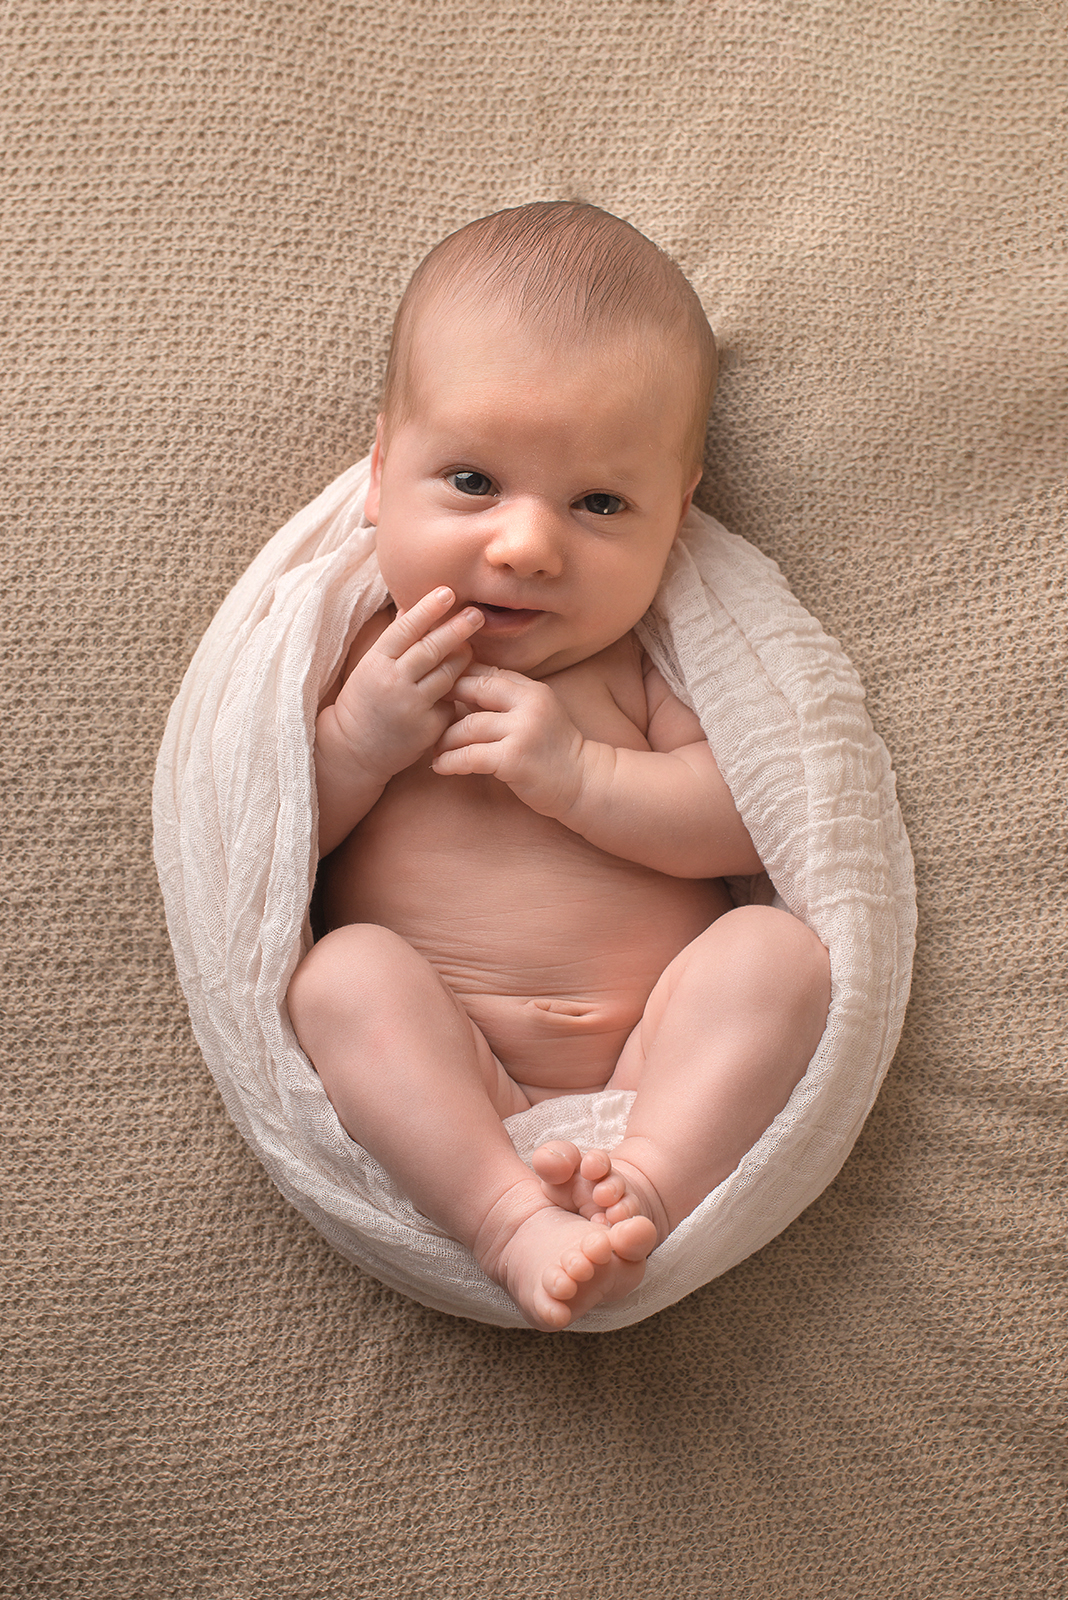 Neugeborenes Baby liegt auf einer Decke